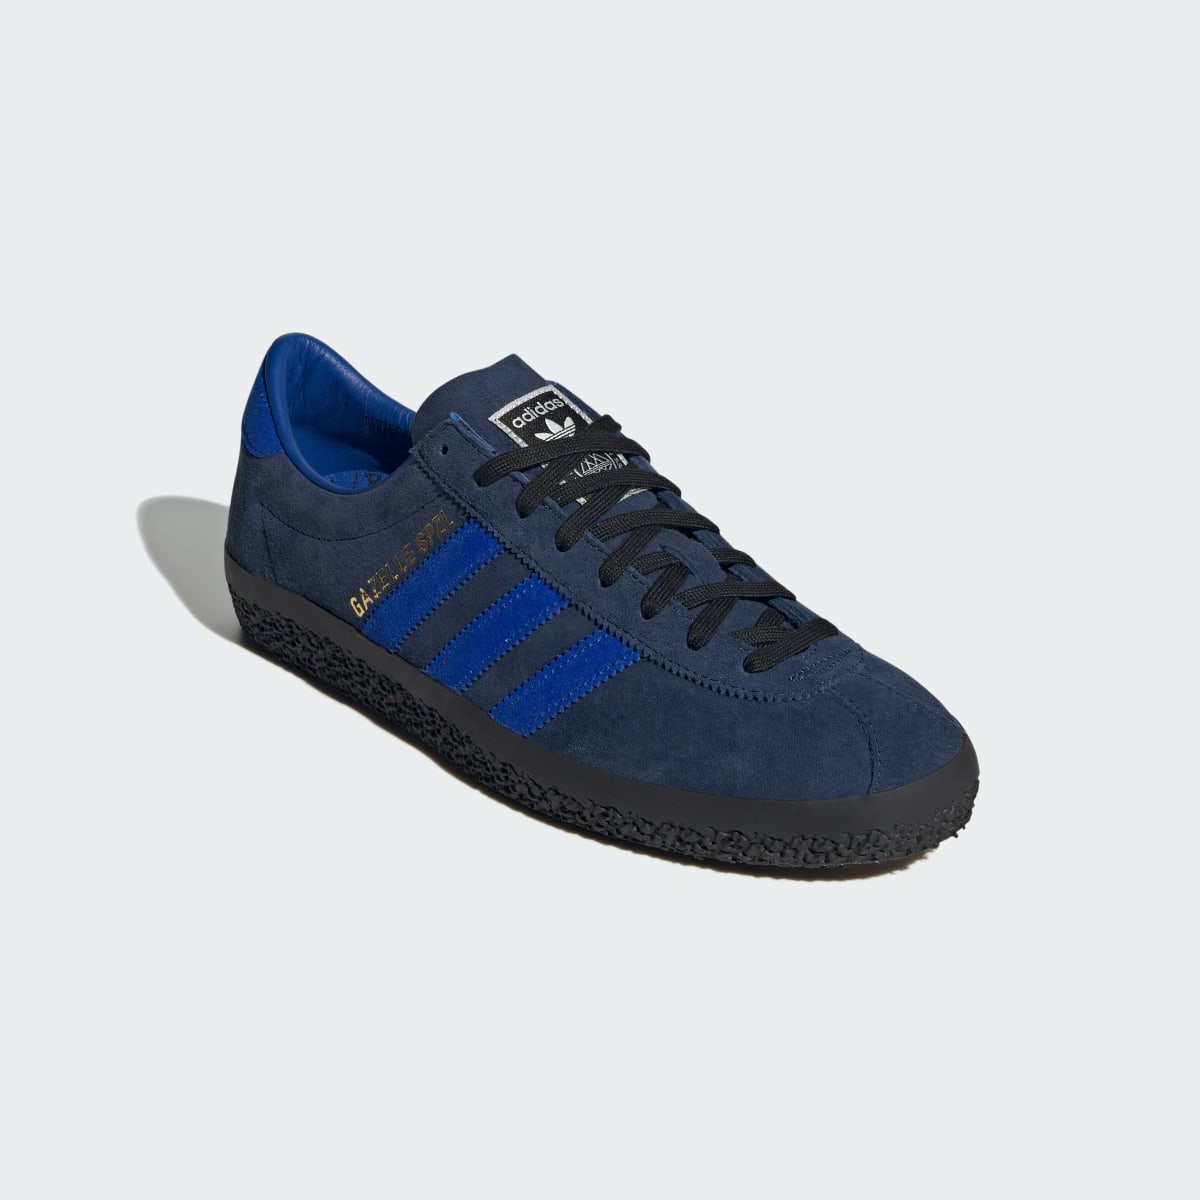 Adidas Gazelle SPZL Shoes. 5